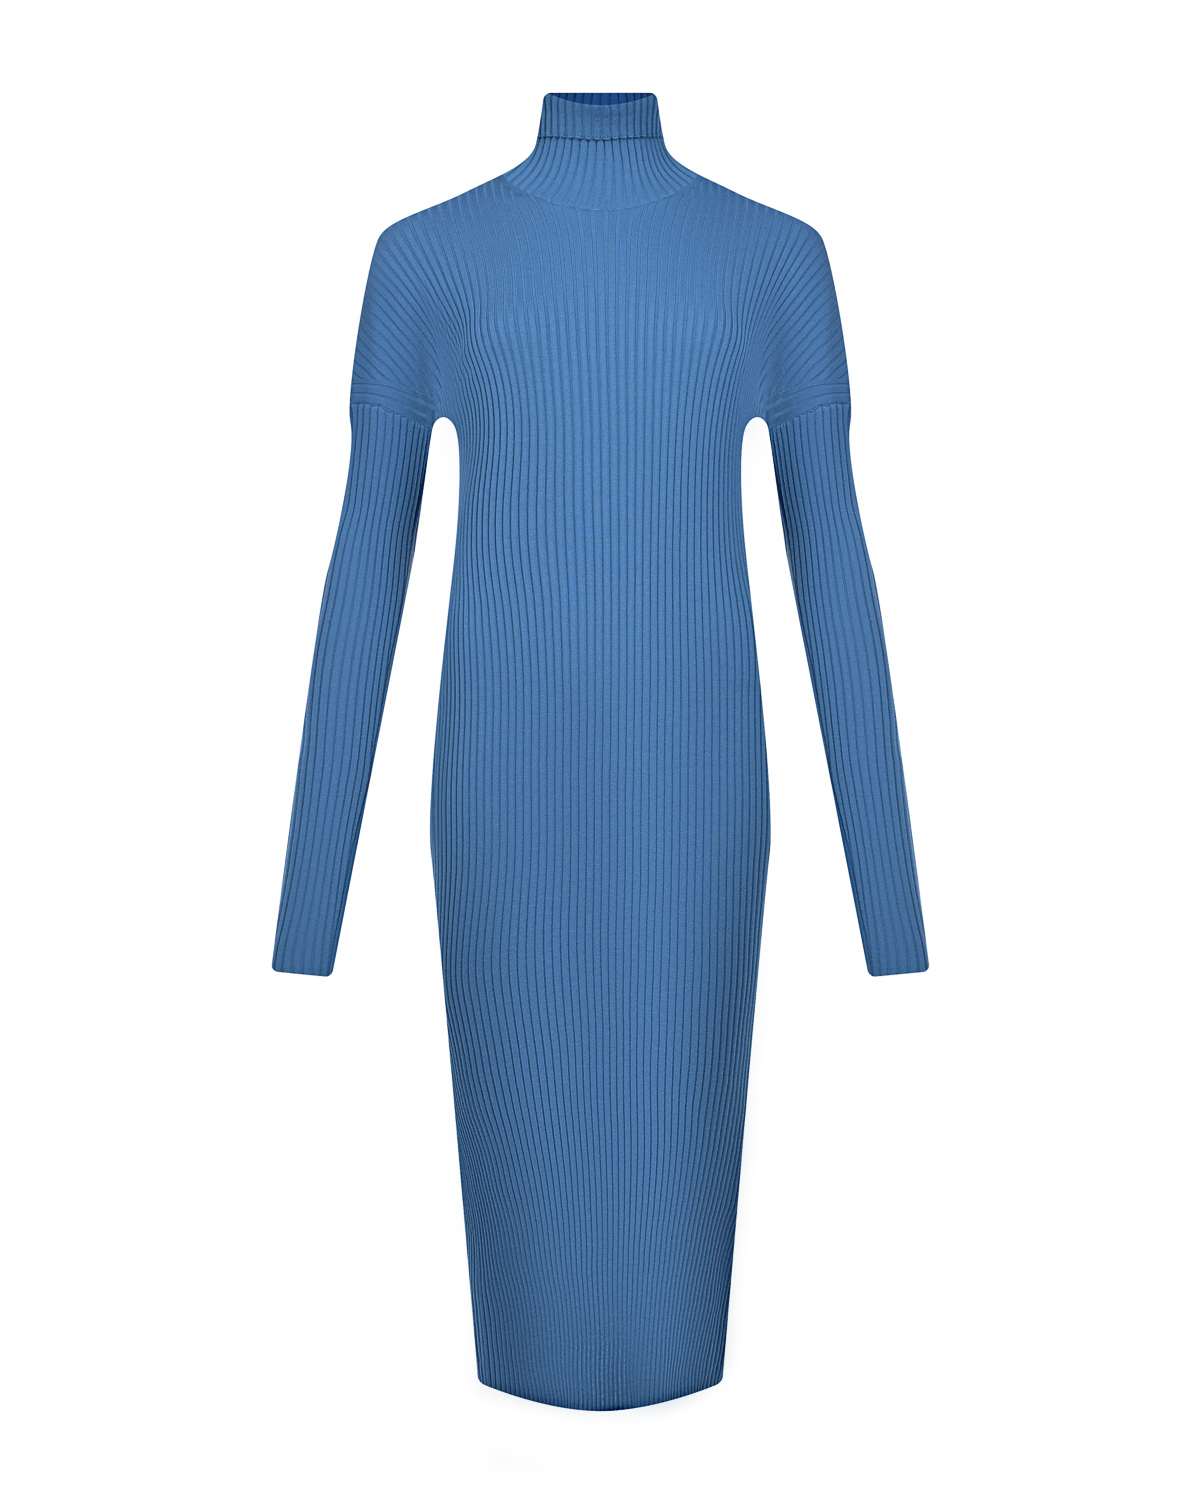 Голубое платье из шерстяного трикотажа MRZ, размер 44, цвет голубой - фото 1